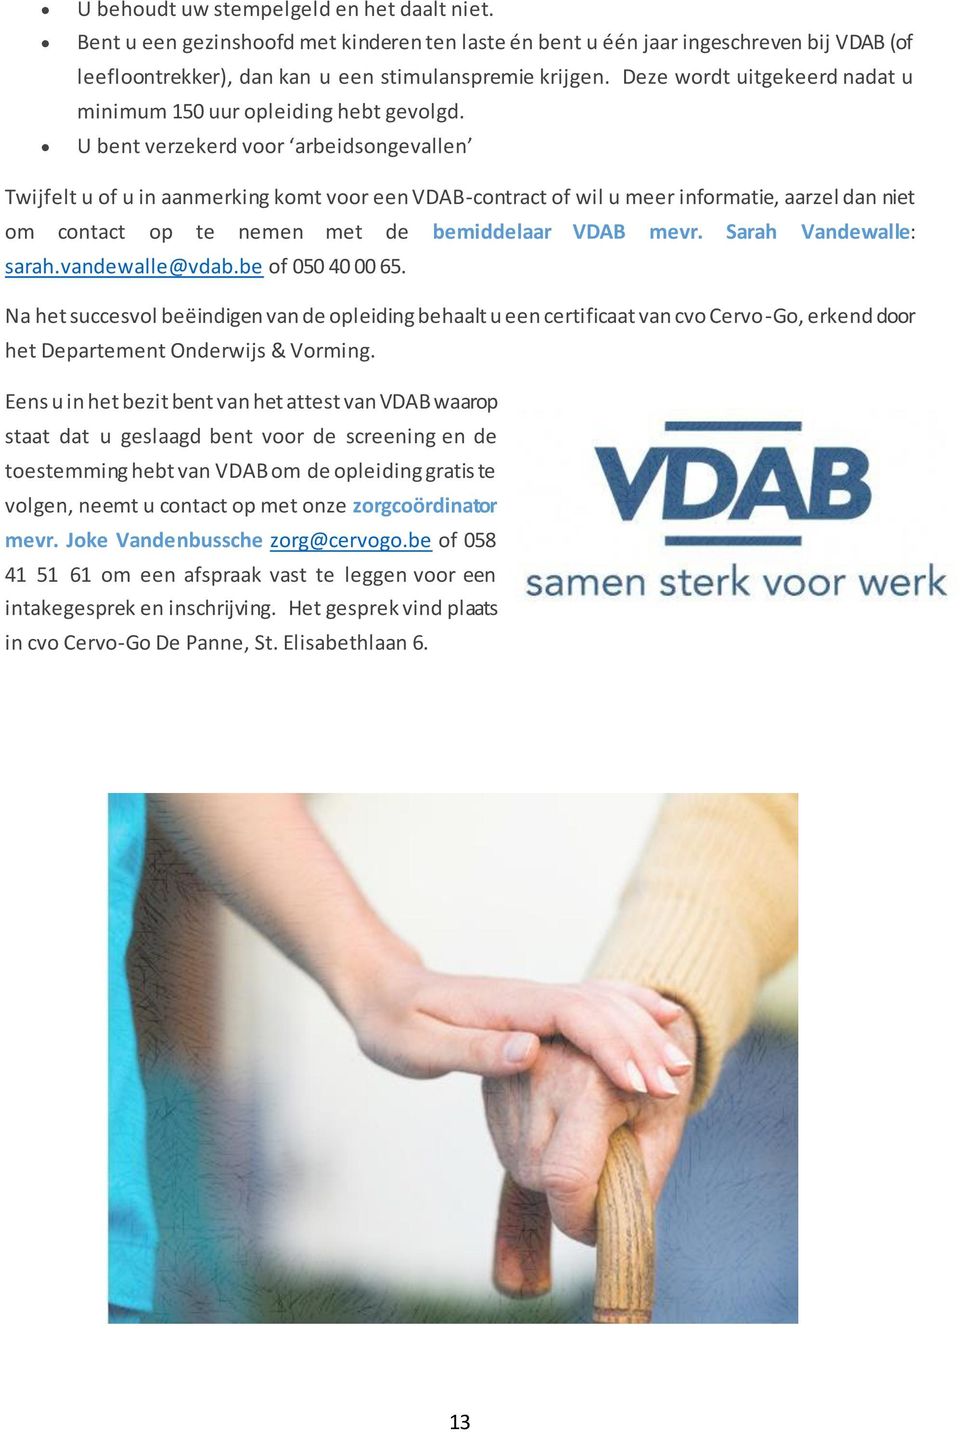 U bent verzekerd voor arbeidsongevallen Twijfelt u of u in aanmerking komt voor een VDAB-contract of wil u meer informatie, aarzel dan niet om contact op te nemen met de bemiddelaar VDAB mevr.